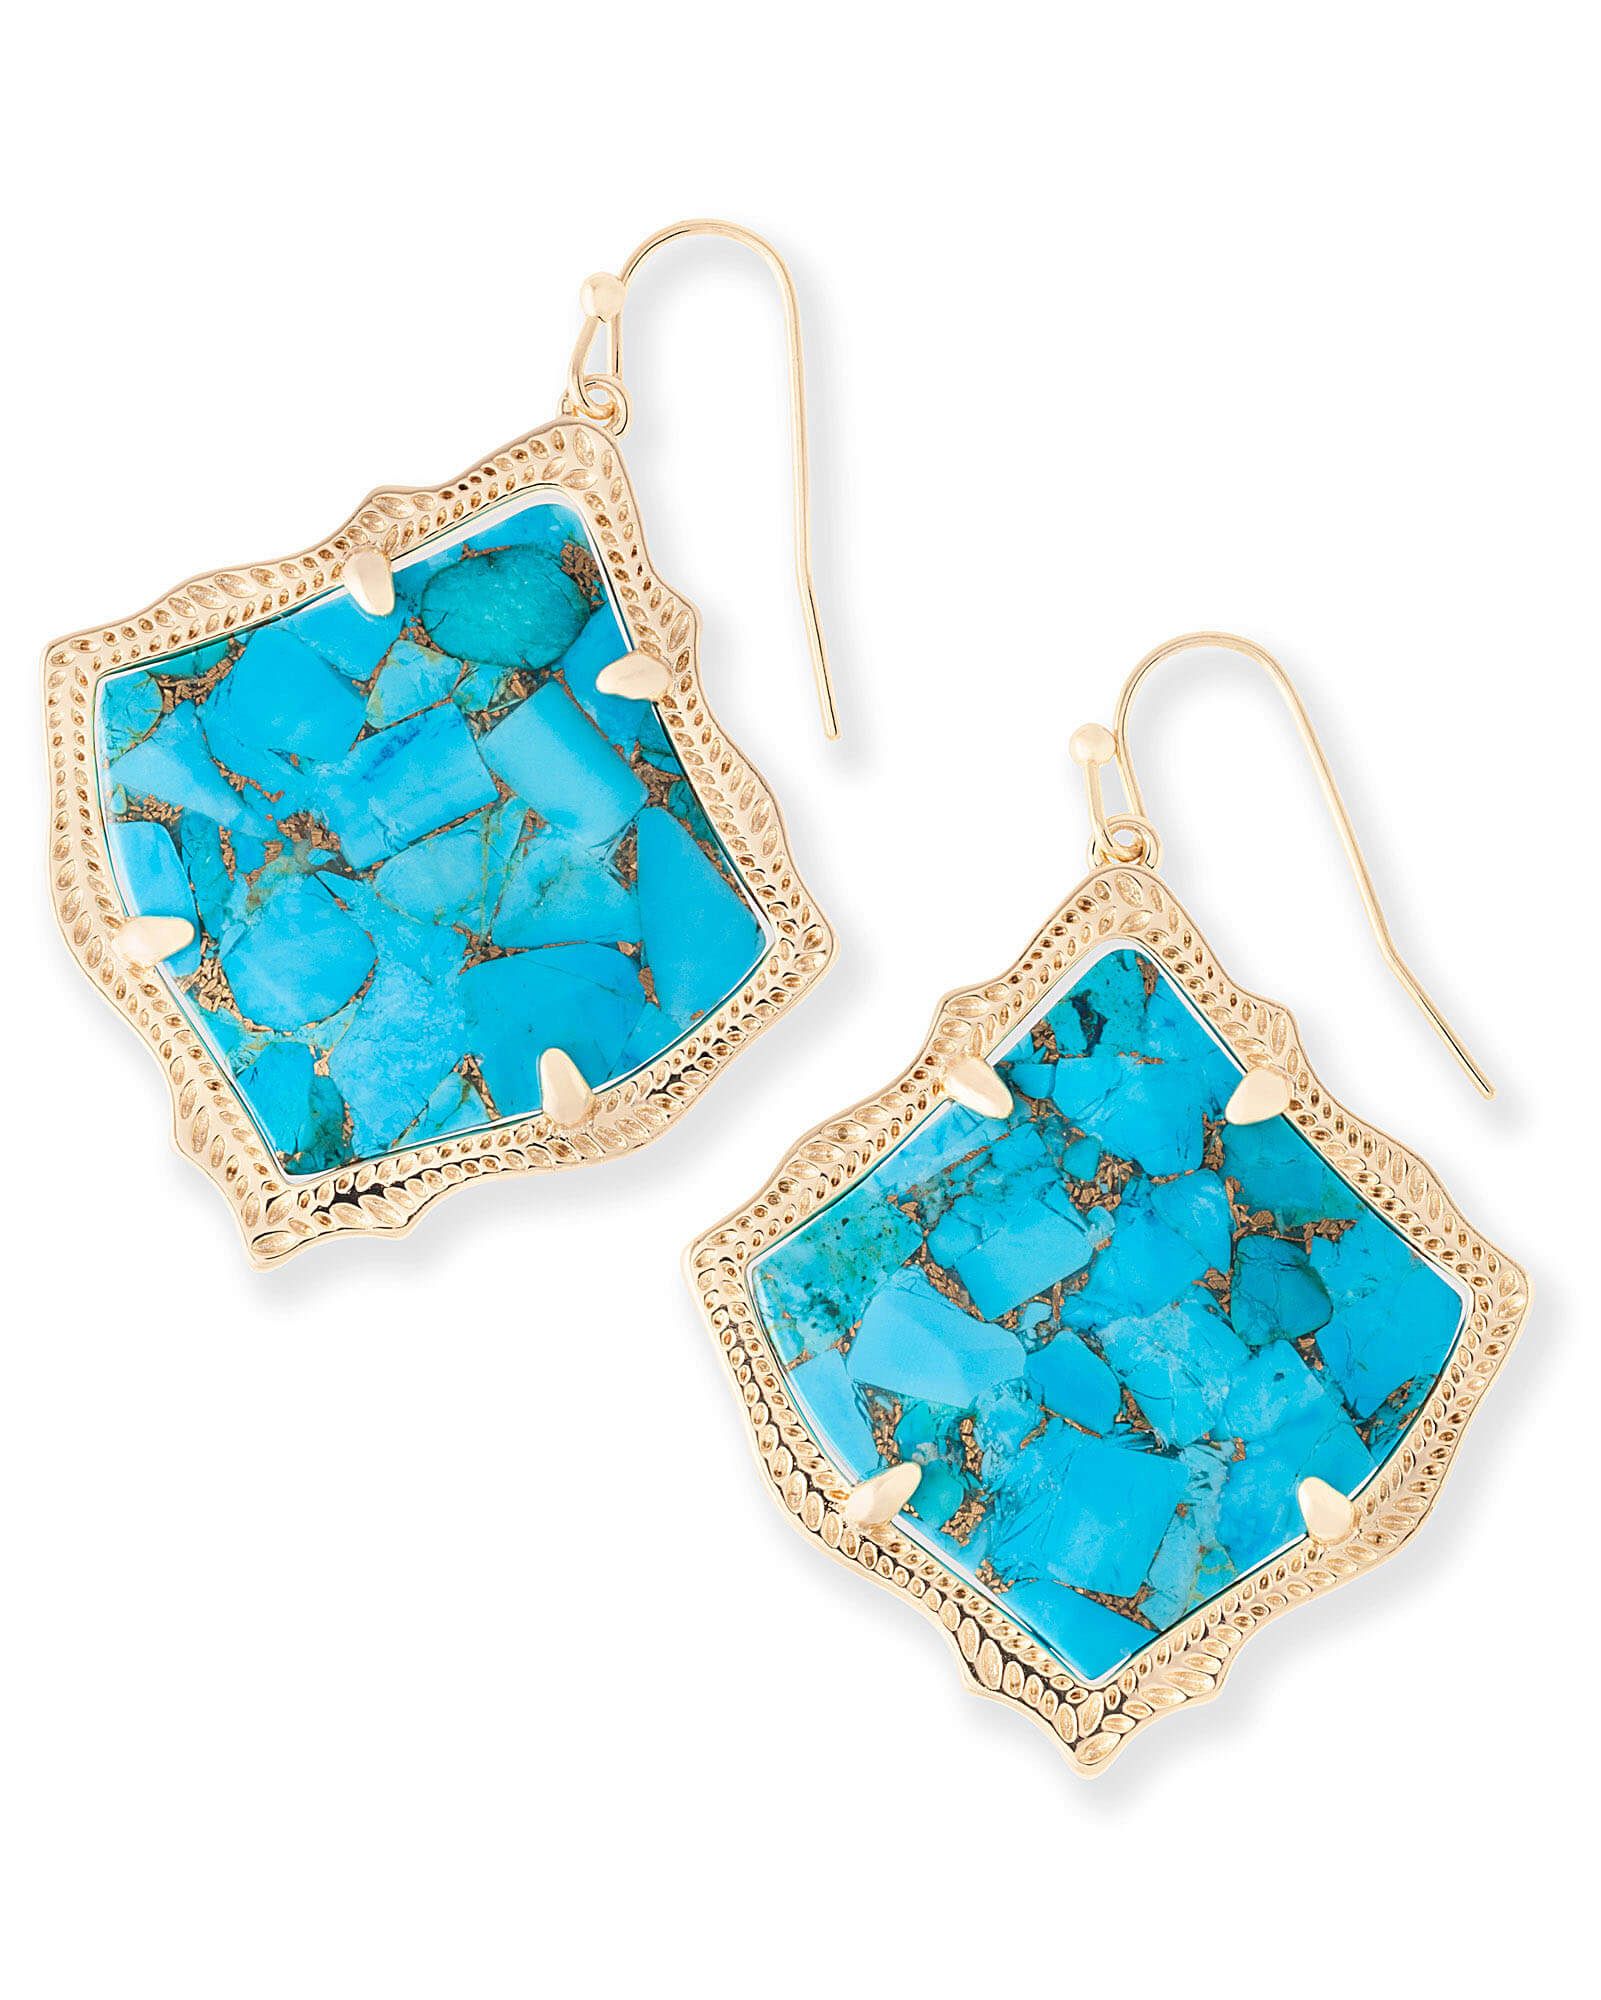 Kirsten Drop Earrings in Bronze Veined Turquoise Magnesite | Kendra Scott